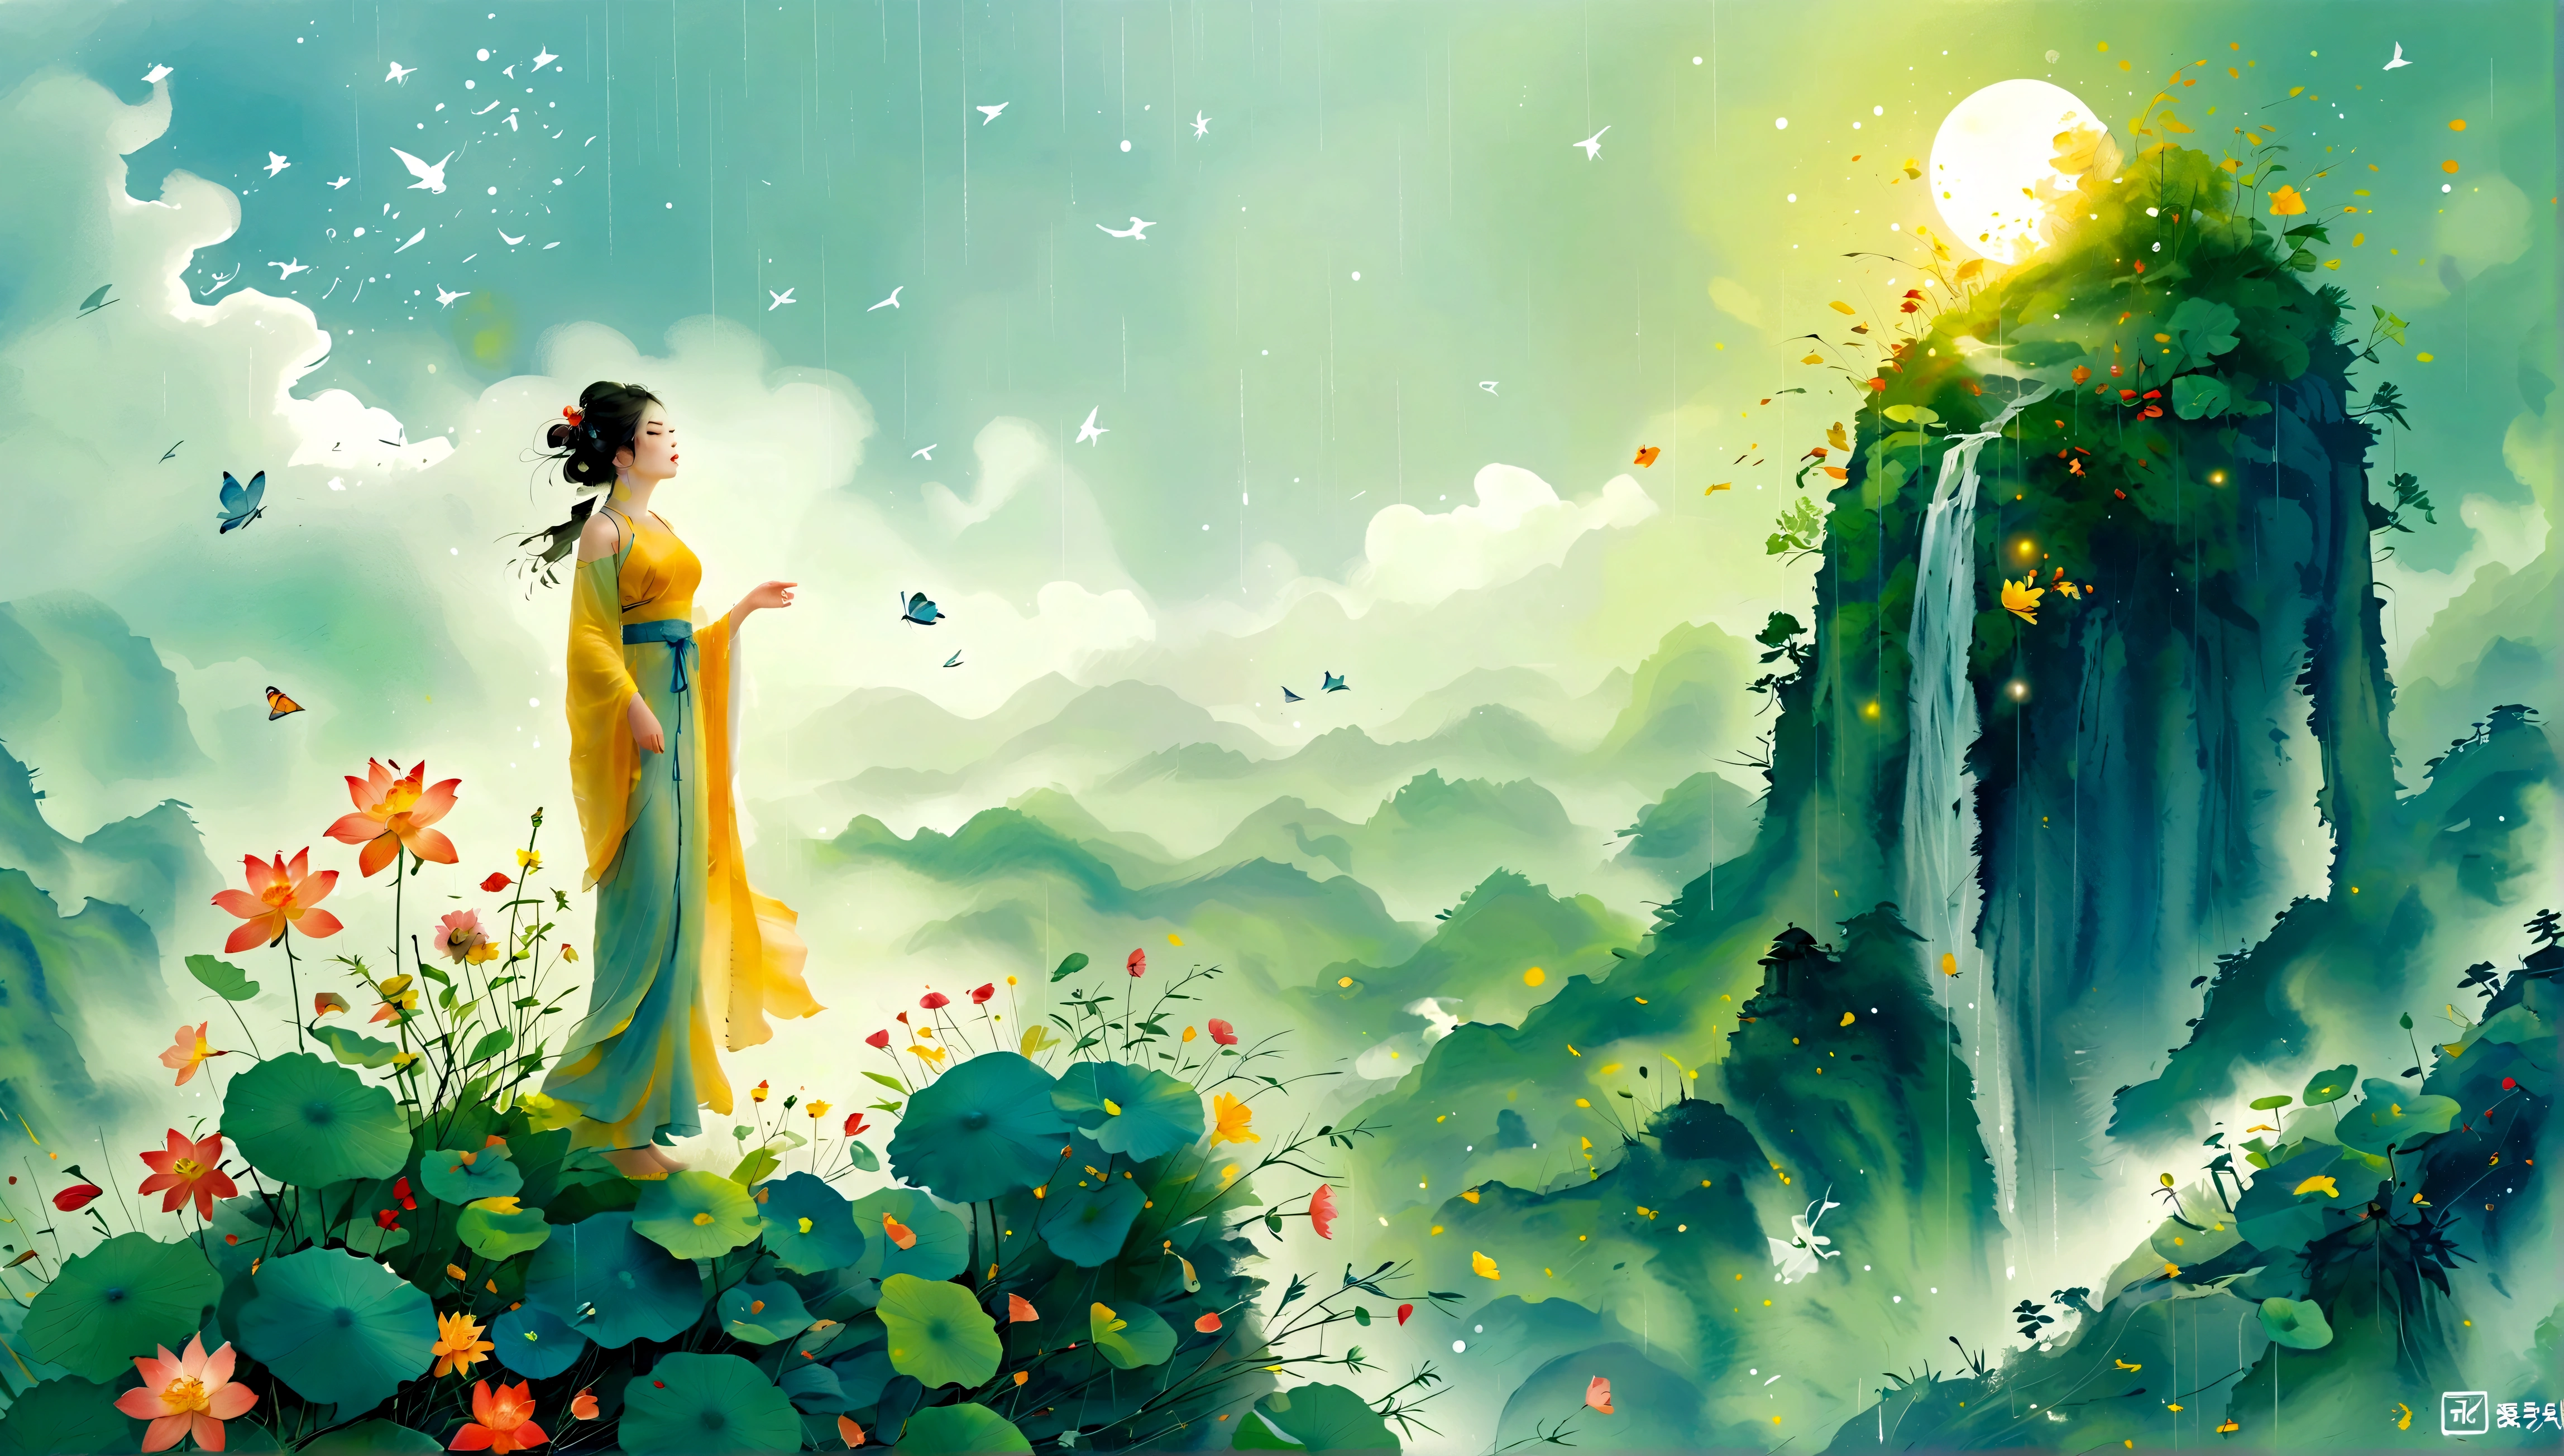 Cai GuoRUNs Illustrationsstil, 1 Mädchen, Eine Frau in einem langen Rock steht auf einer Klippe und blickt in den Sternenhimmel, Göttin des Weltraums, Göttin der Milchstraße, Göttin des Himmels, Astral ätherisch, Traum, Wunderschöner himmlischer Zauberer, wunderschönes Fantasygemälde, wunderschöne Fantasy-Kunst, Ätherische Fantasie, Very wunderschöne Fantasy-Kunst, digitale Kunst Fantasie, bezaubernd und überirdisch, Fantasie Schönheit, Die wunderschöne Kunst des Octane UHD 8K-Renderings, volumetrisches Licht, natürliches weiches Licht, (Ultra-empfindlich:1.2, Konzentrationsverlust:1.2, Bunt, Filmbeleuchtung, Raytracing), Super rich, Extrem detailliert, 1cgrssh1, Chiaroscuro, Meisterwerk, 8k